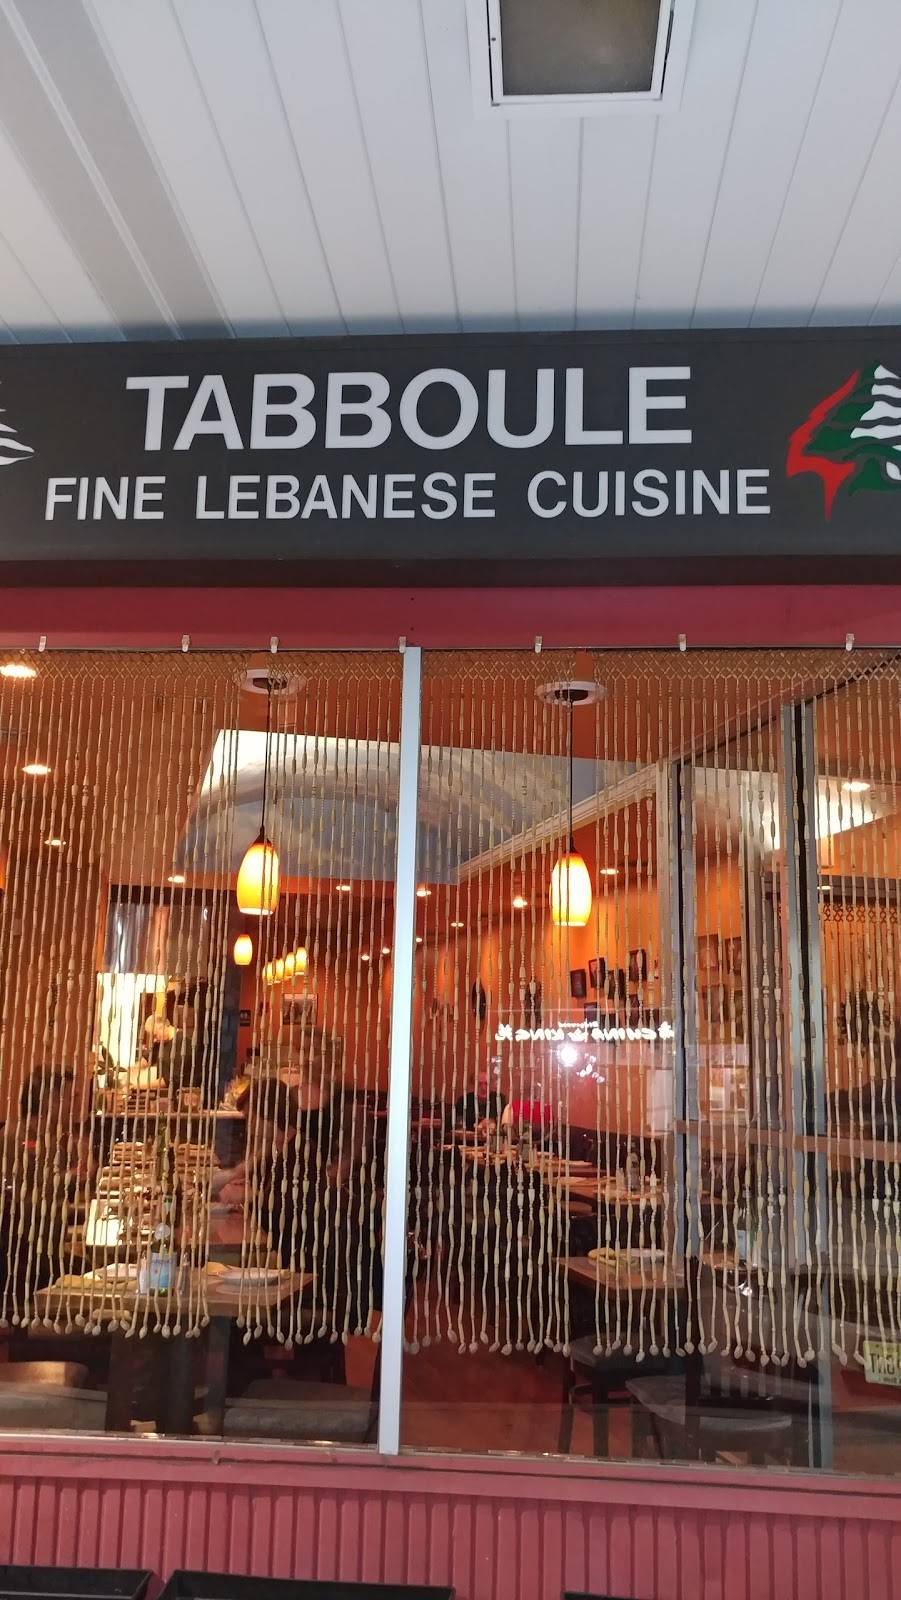 Tabboule Fine Lebanese Cuisine | restaurant | 3212, 90 N Maple Ave, Ridgewood, NJ 07450, USA | 2014447044 OR +1 201-444-7044